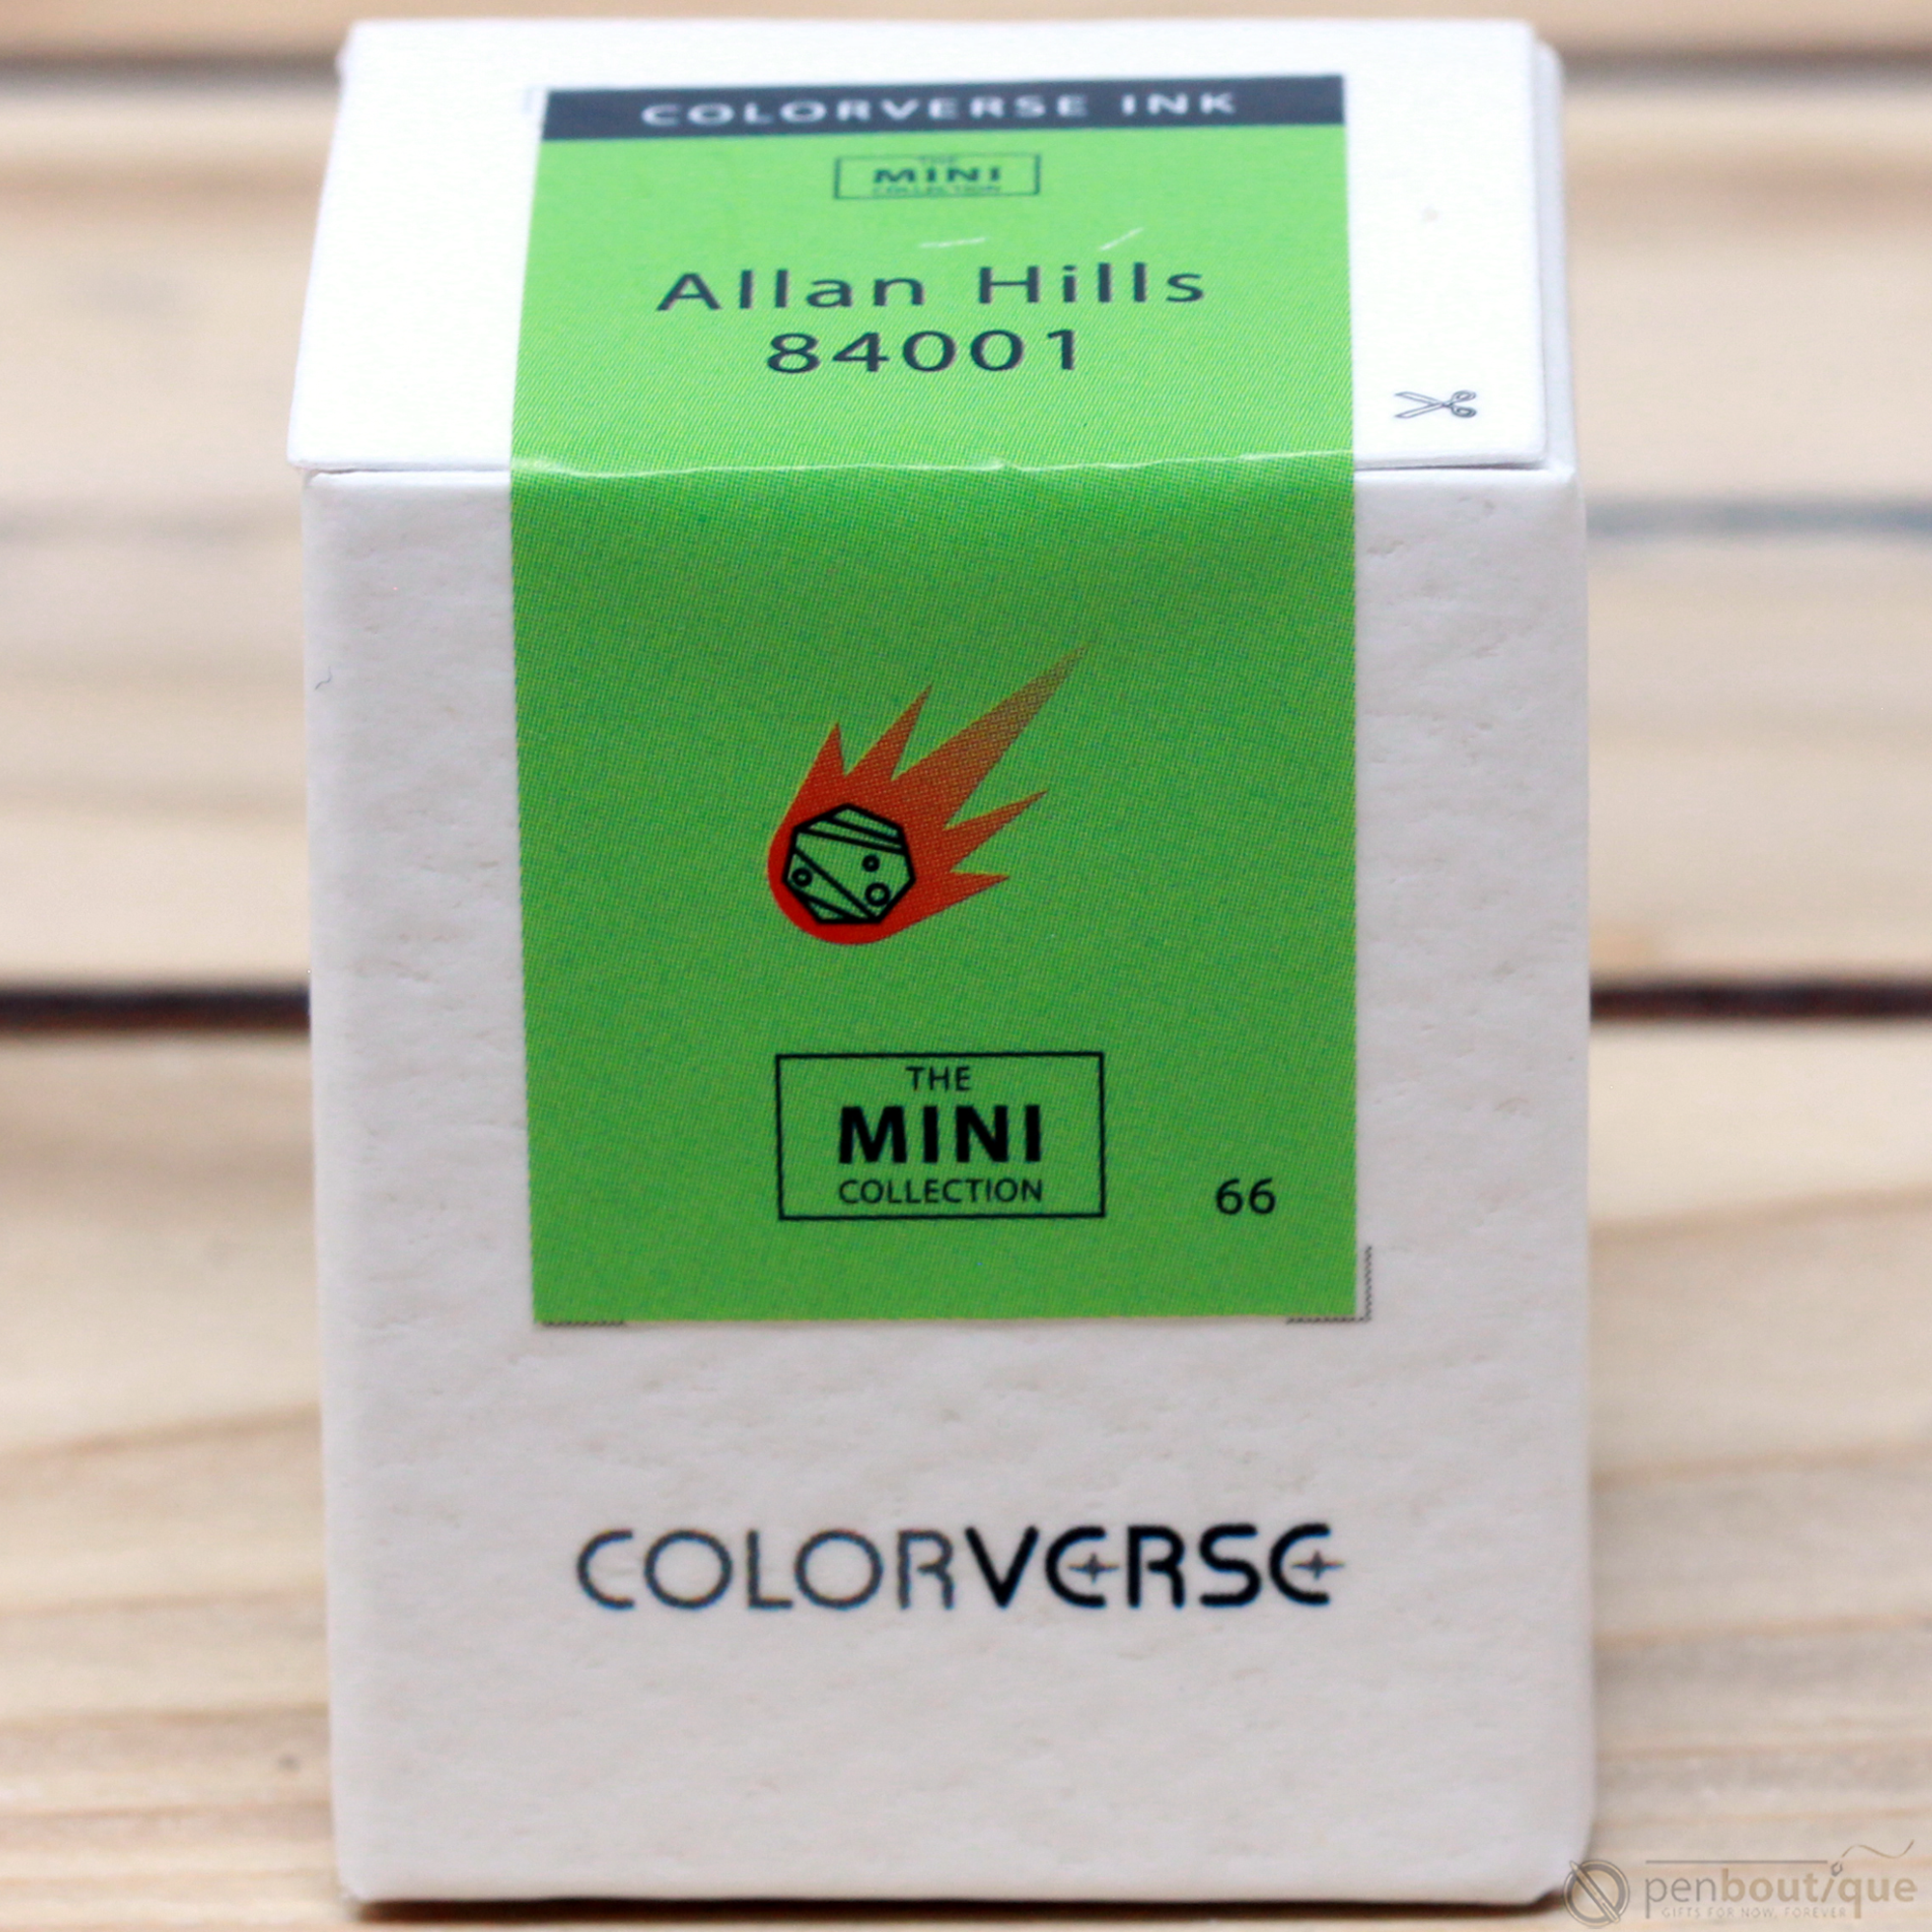 Colorverse Mini Ink - The Red Planet - Allan Hills 84001 - 5ml-Pen Boutique Ltd